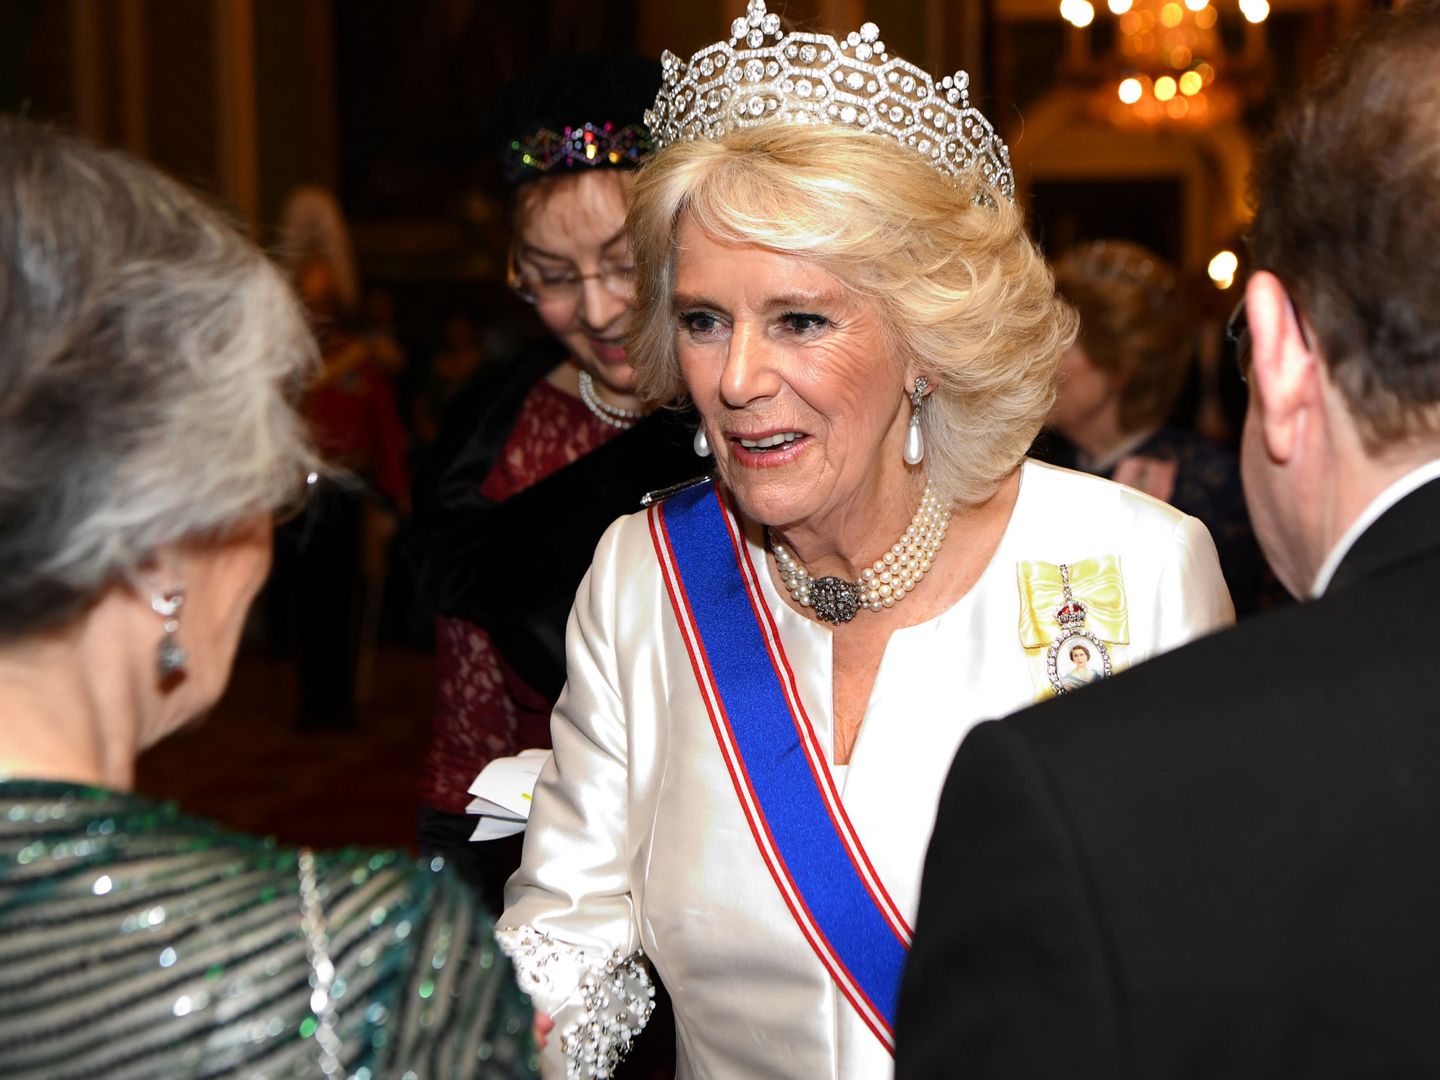 Camilla con la banda de la Real Orden Victoriana. (Reuters)